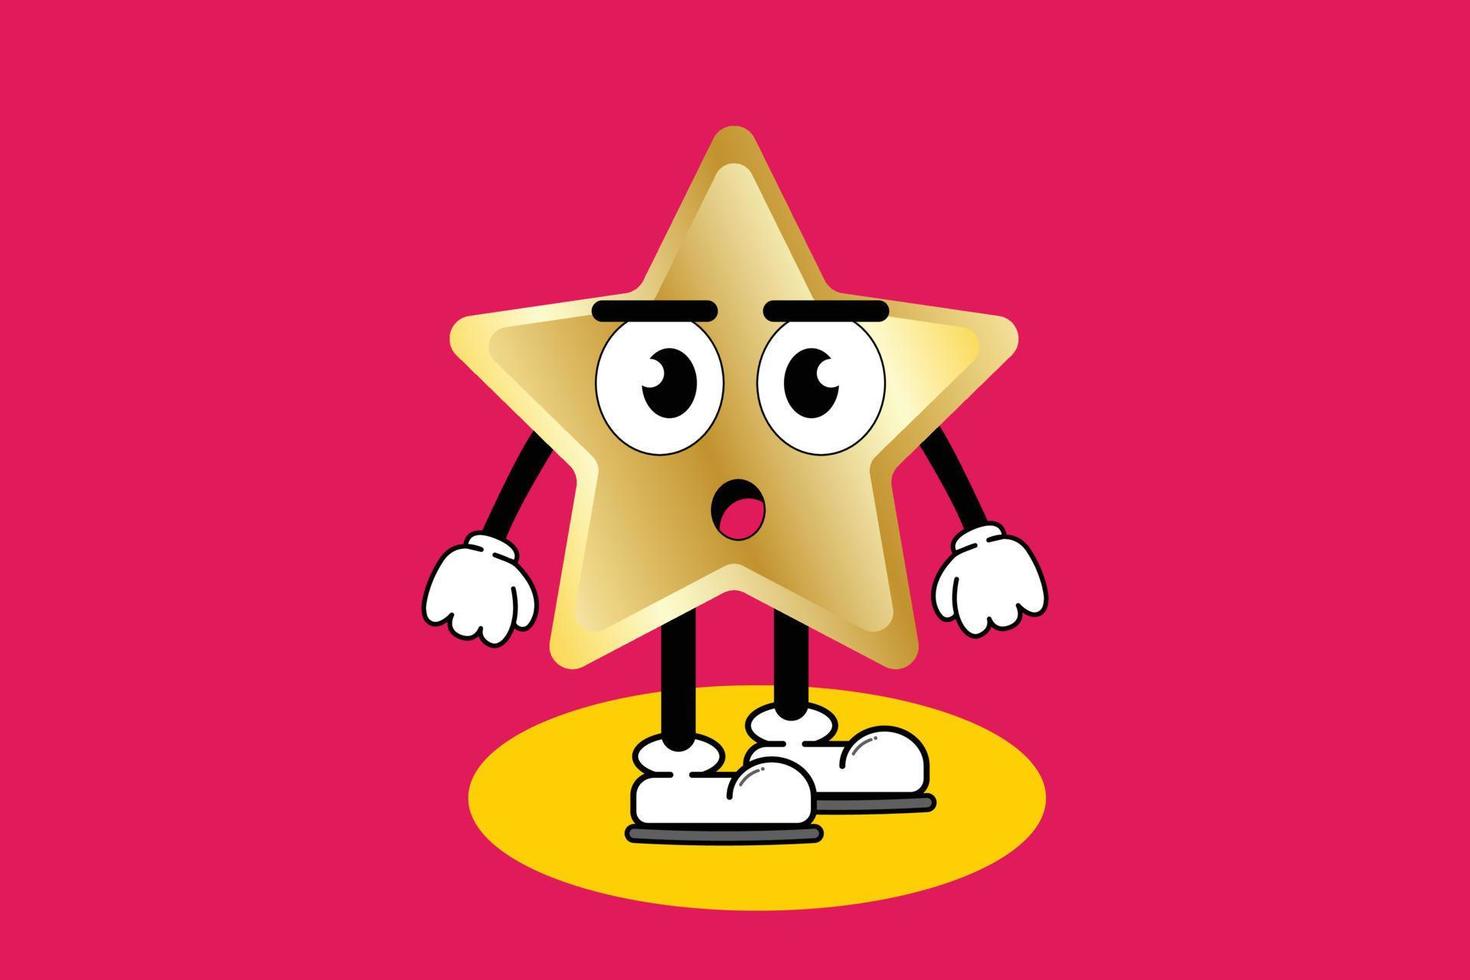 personnage de dessin animé graphique illustration vectorielle de mascotte mignonne étoile dorée avec pose. adapté à l'illustration de livre pour enfants et au dépliant de conception d'éléments, affiche. vecteur